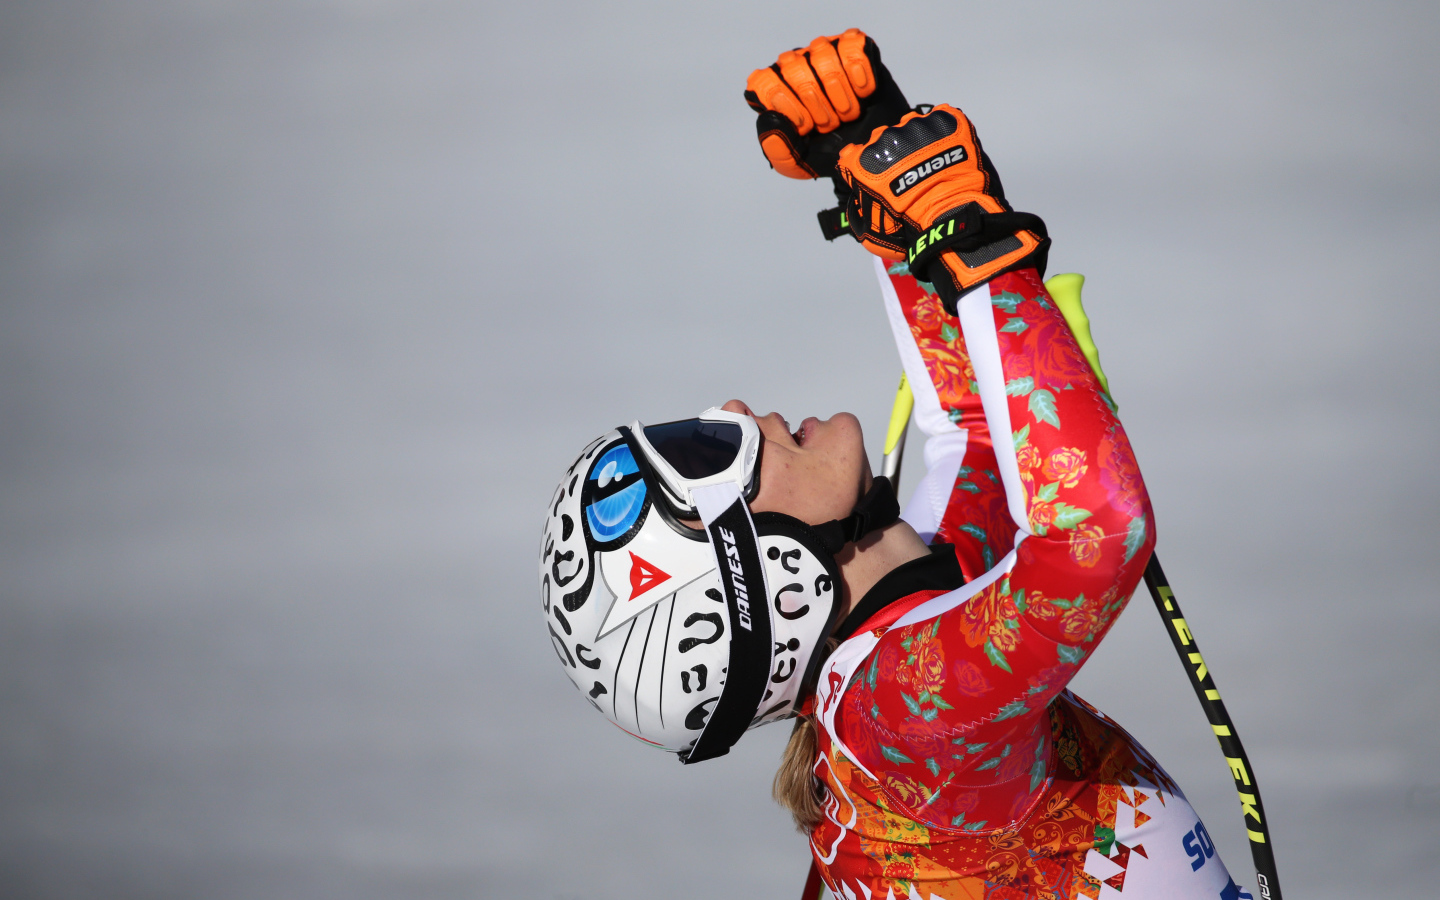 Николь Хосп австрийская лыжница серебряная и бронзовая медаль на олимпиаде в Сочи 2014 год